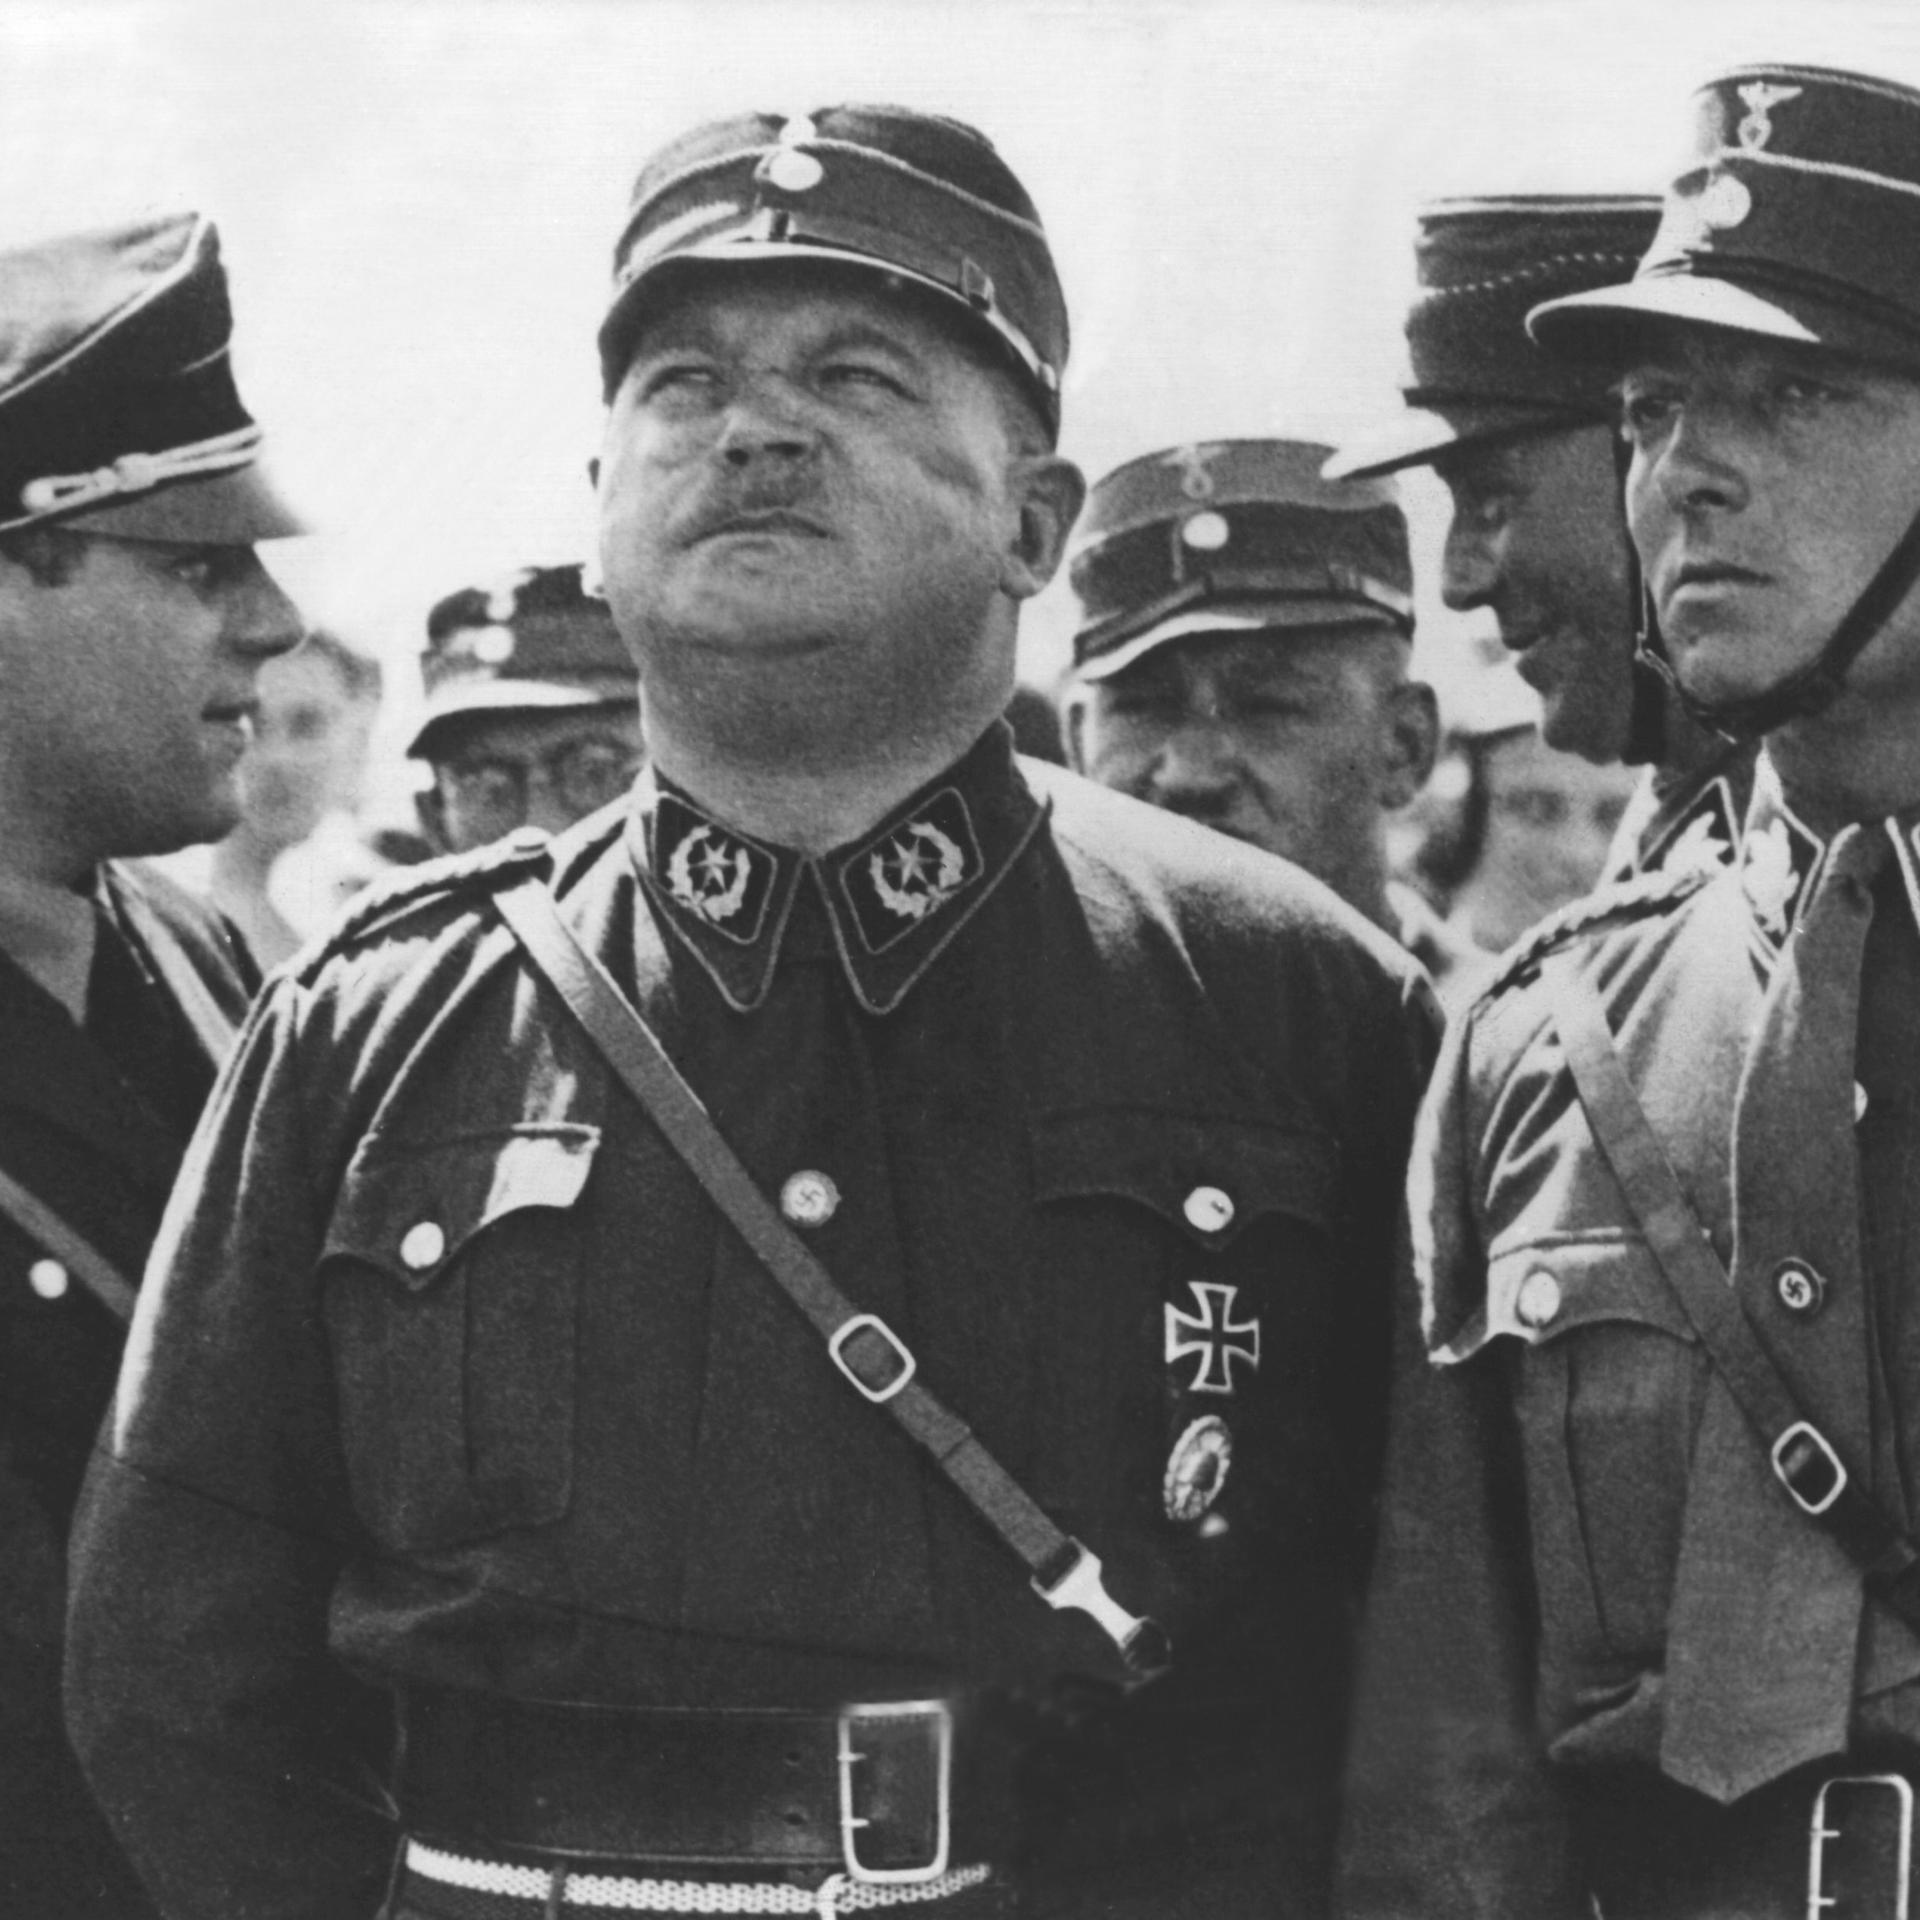 Hitler und Röhm - Kein Putsch, sondern terroristischer Massenmord